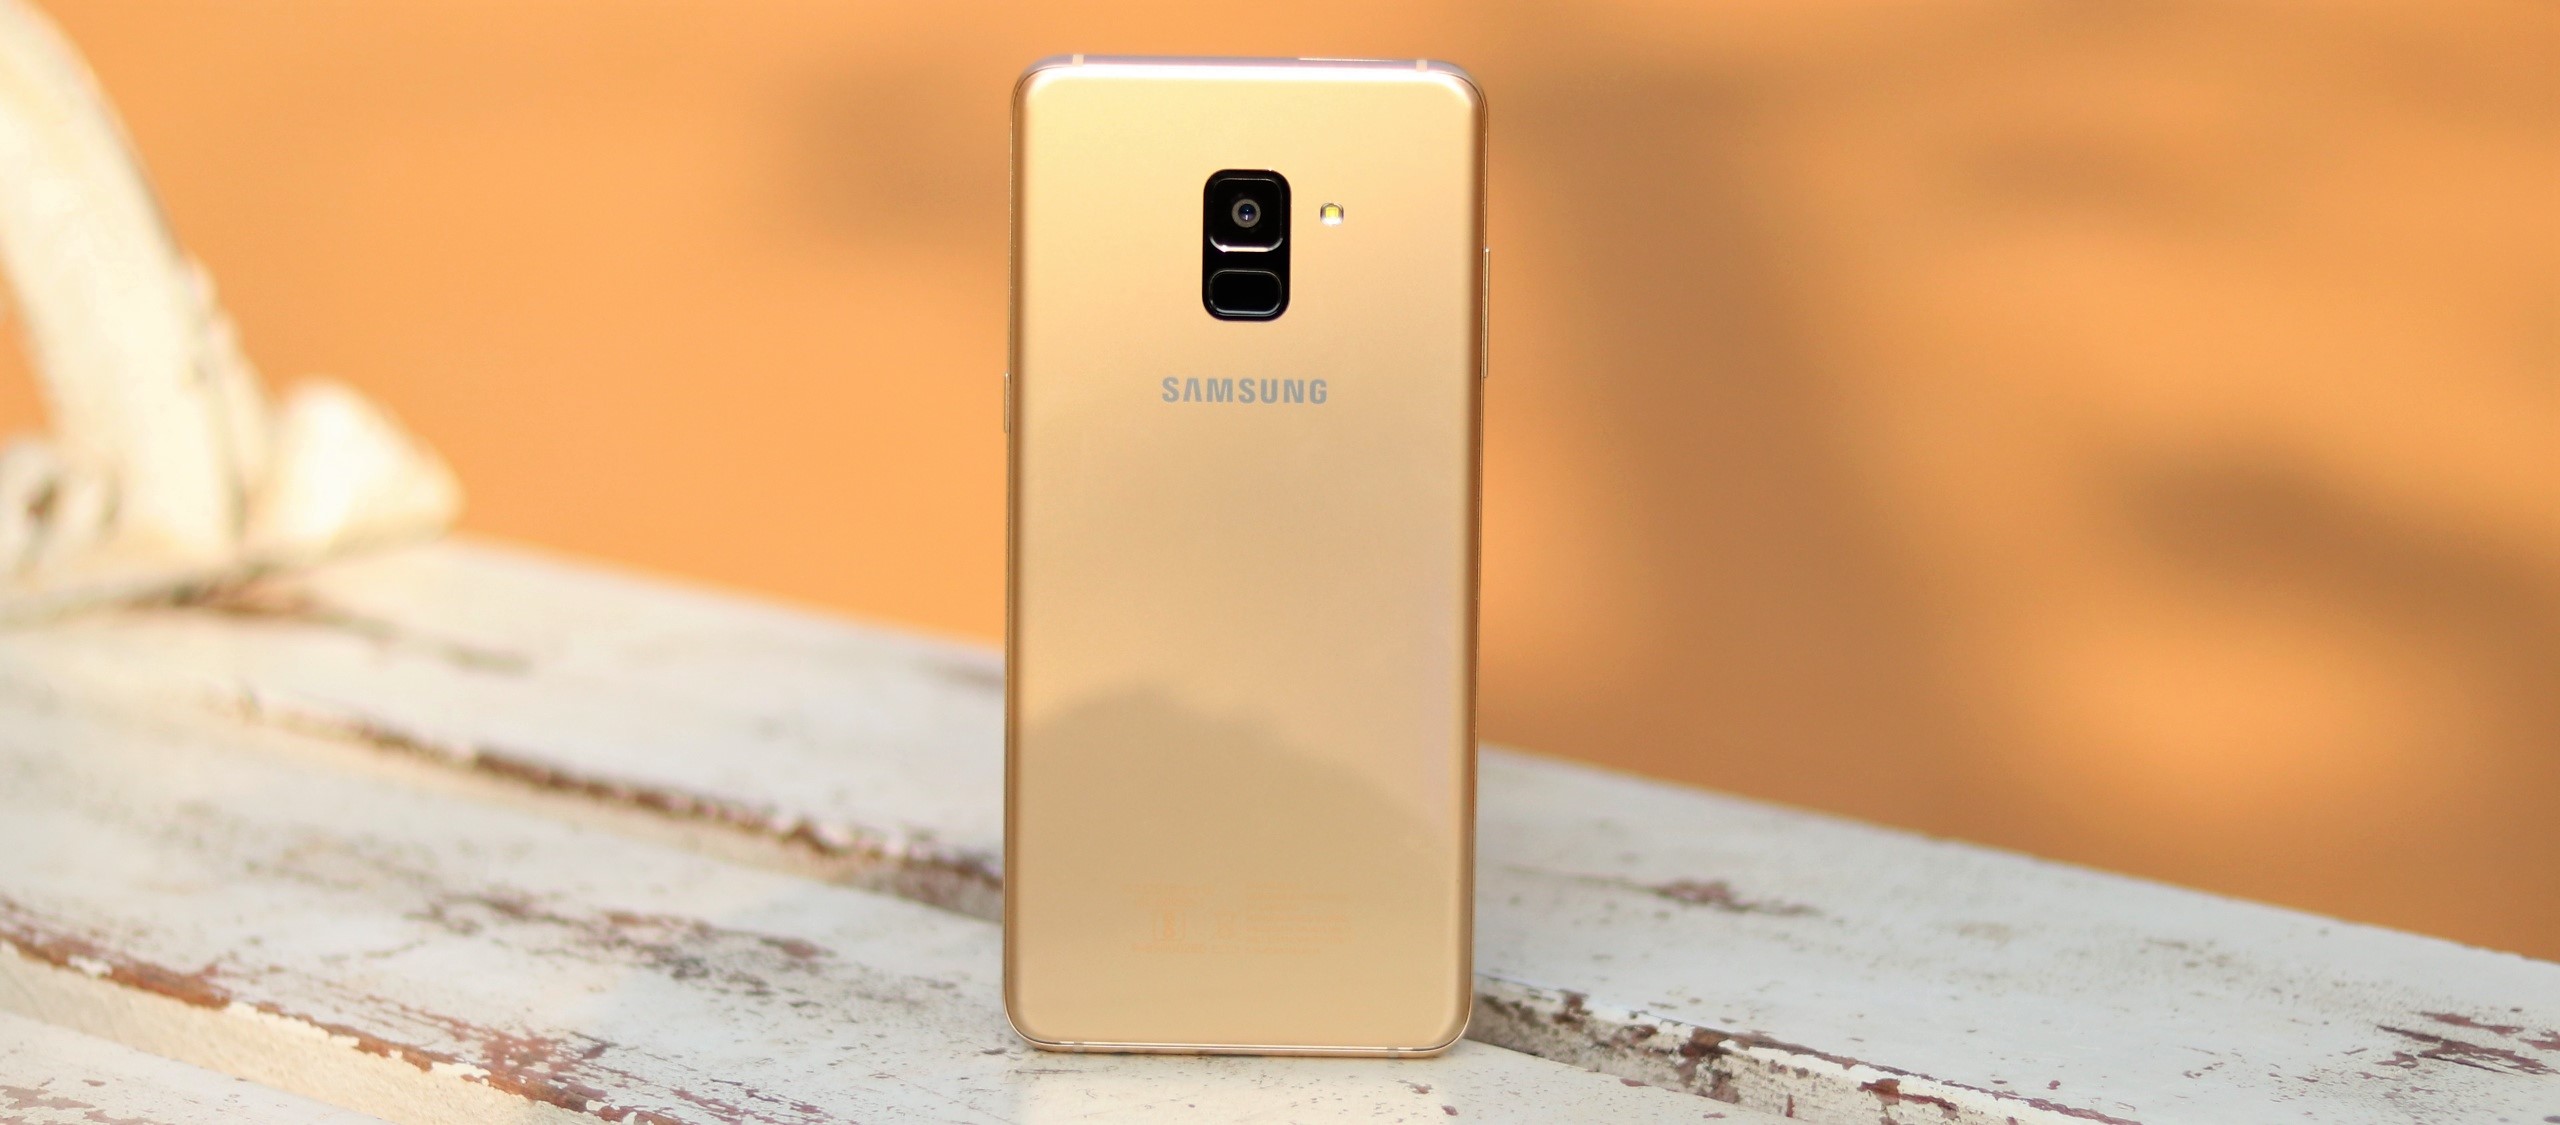 The Grafu® 3D Touch Pellicola Protettiva in Vetro Temperato per Samsung Galaxy A8 Plus 2018 Nessuna Bolla Facile Installazione Galaxy A8 Plus 2018 Vetro Temperato 1 Pezzi 